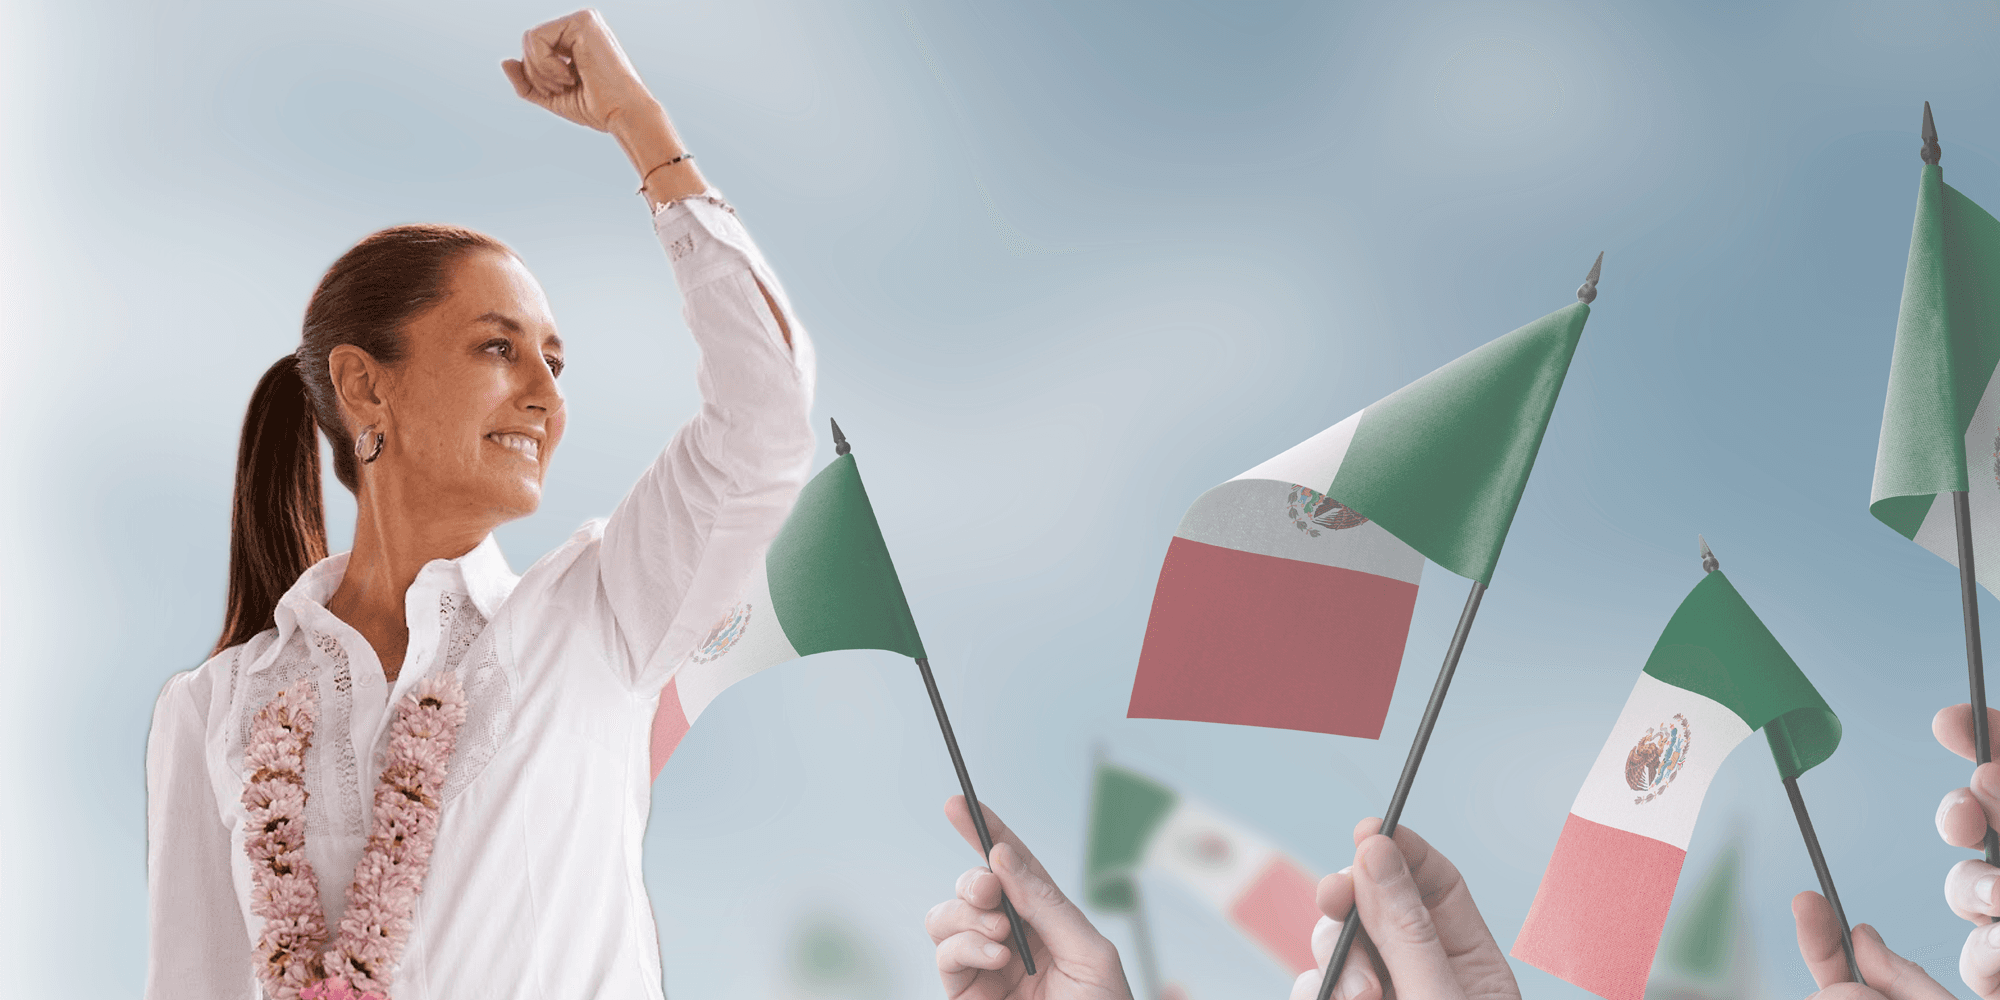 ما دلالات فوز أول امرأة برئاسة المكسيك؟